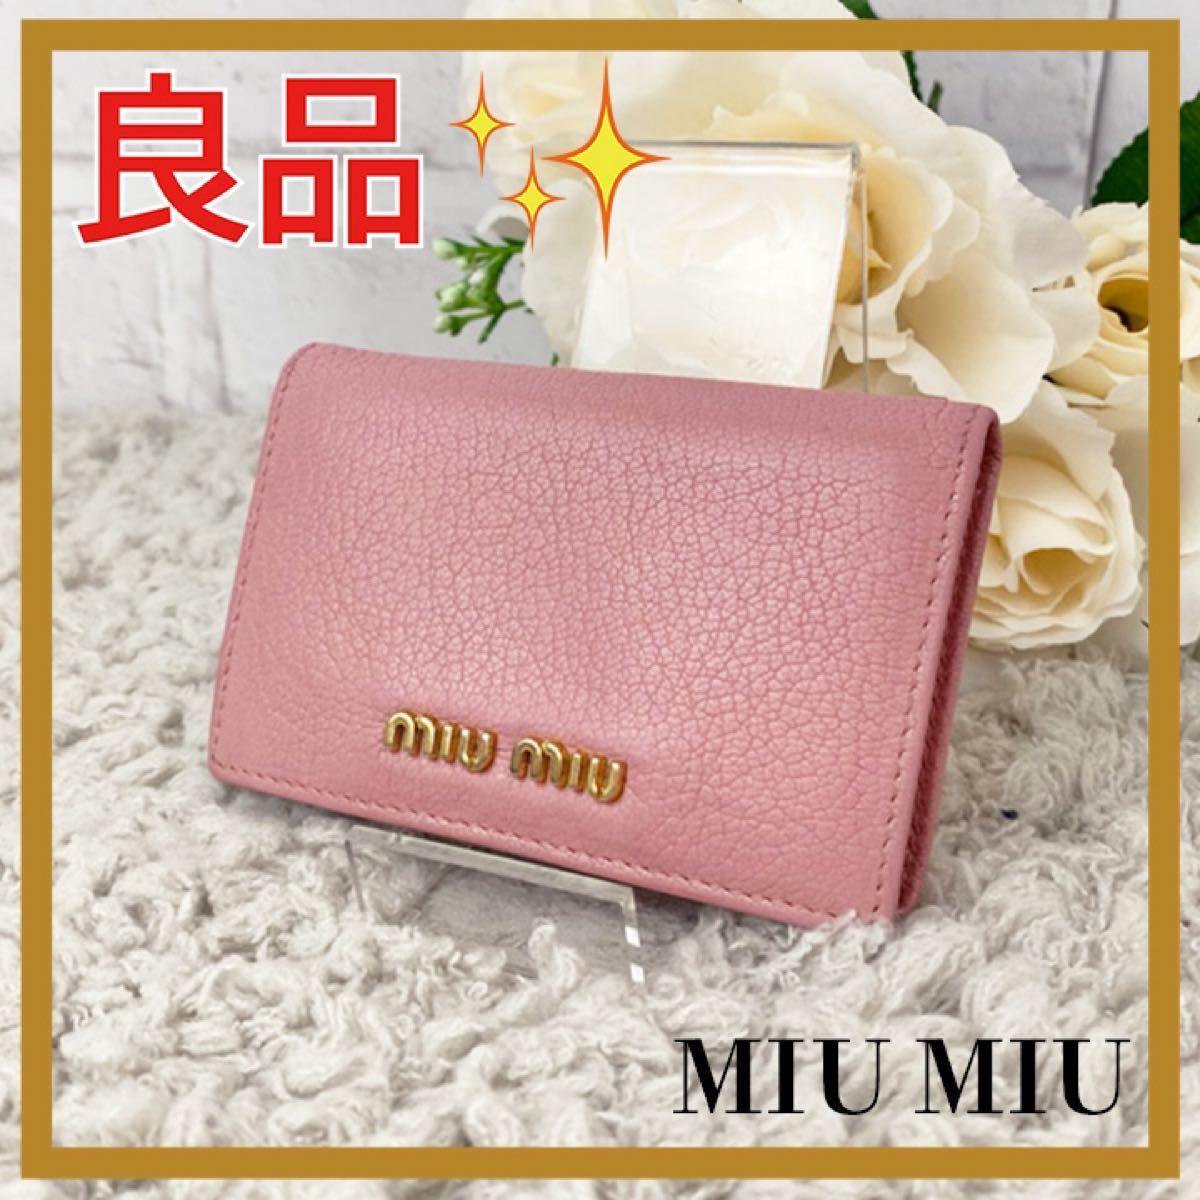 新品特価品 【Miu Miu】カードケース 新品未使用 5MC208 名刺入れ/定期入れ